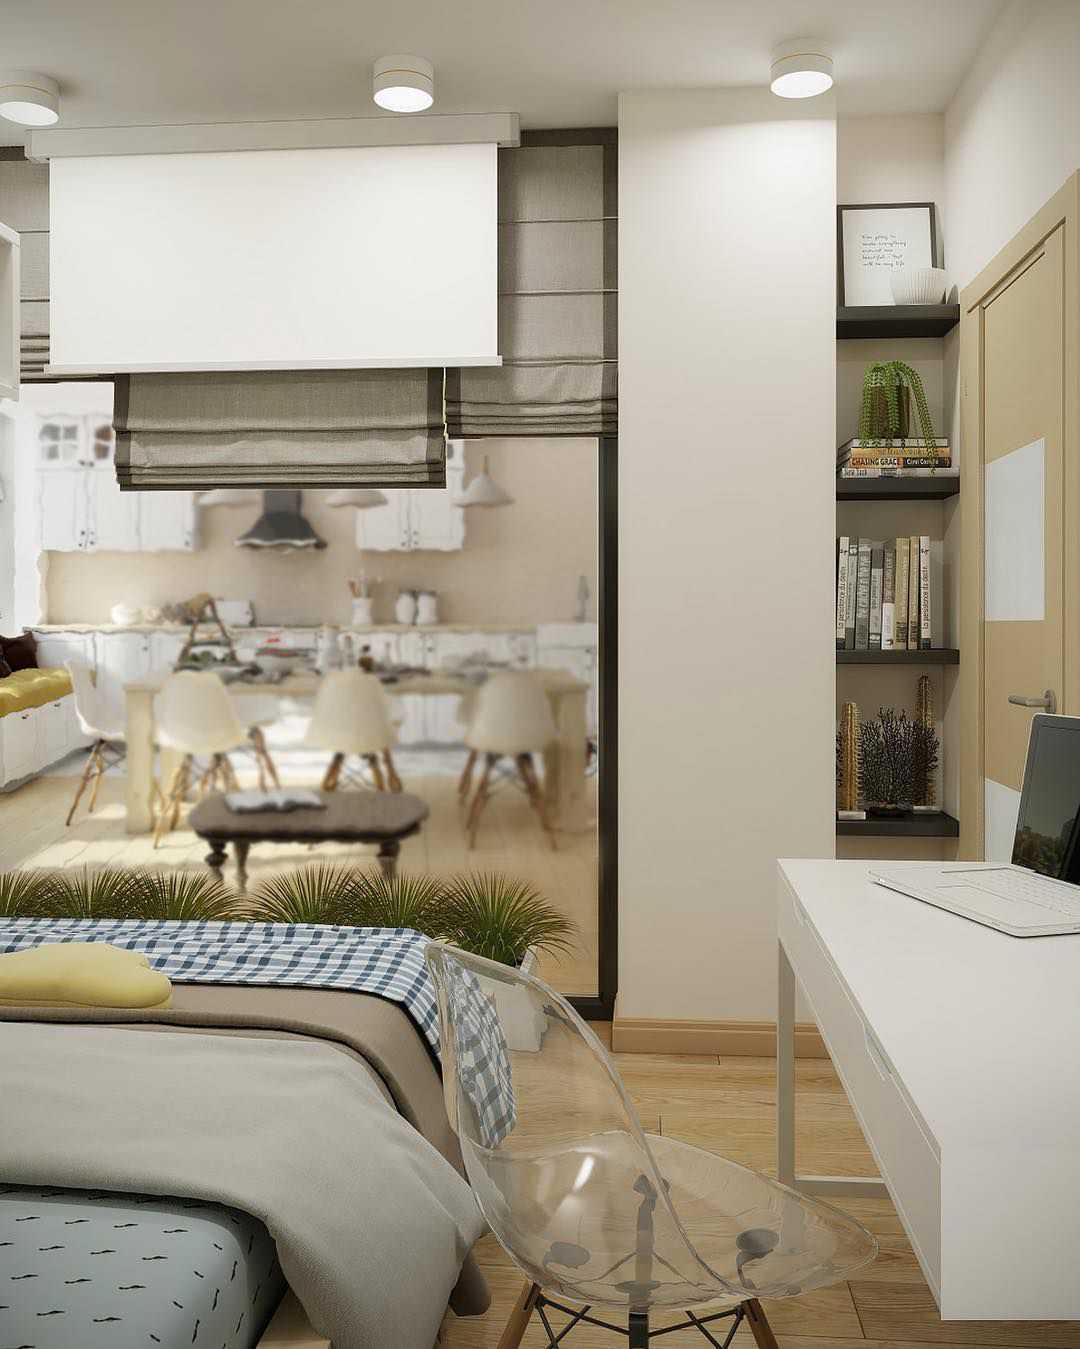 2019 Дизайн спальной комнаты фото определяется его назначением Важным является цвет, количество предметов, вид текстиля, освещение и весь интерьер